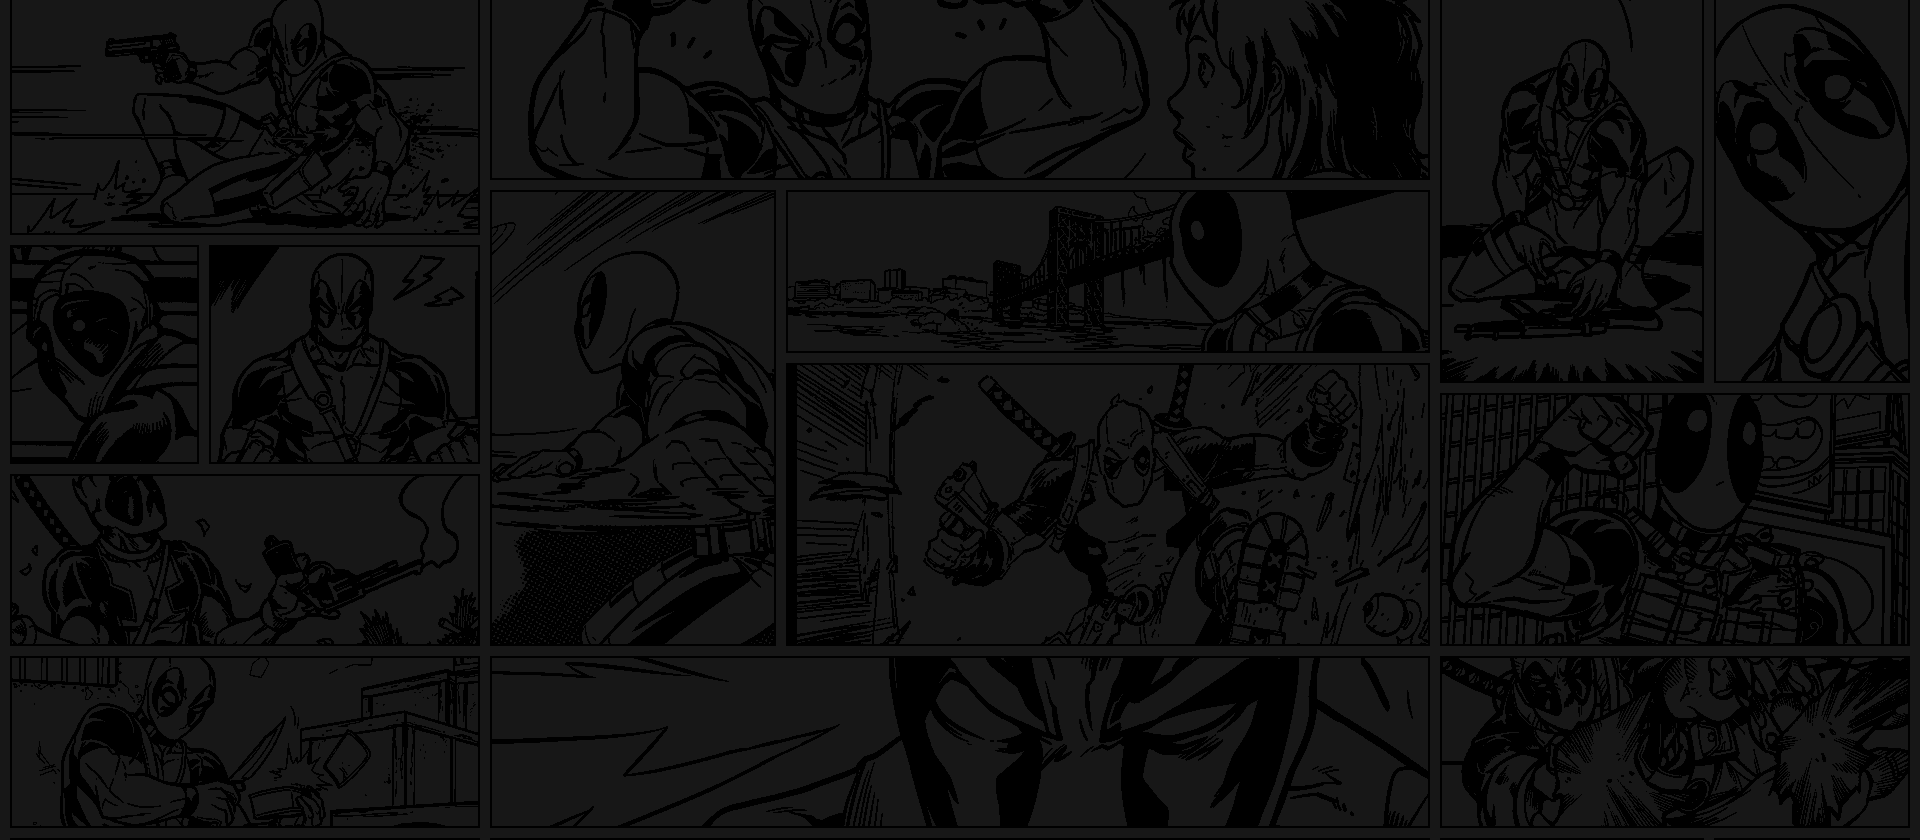 Deadpool comic panels